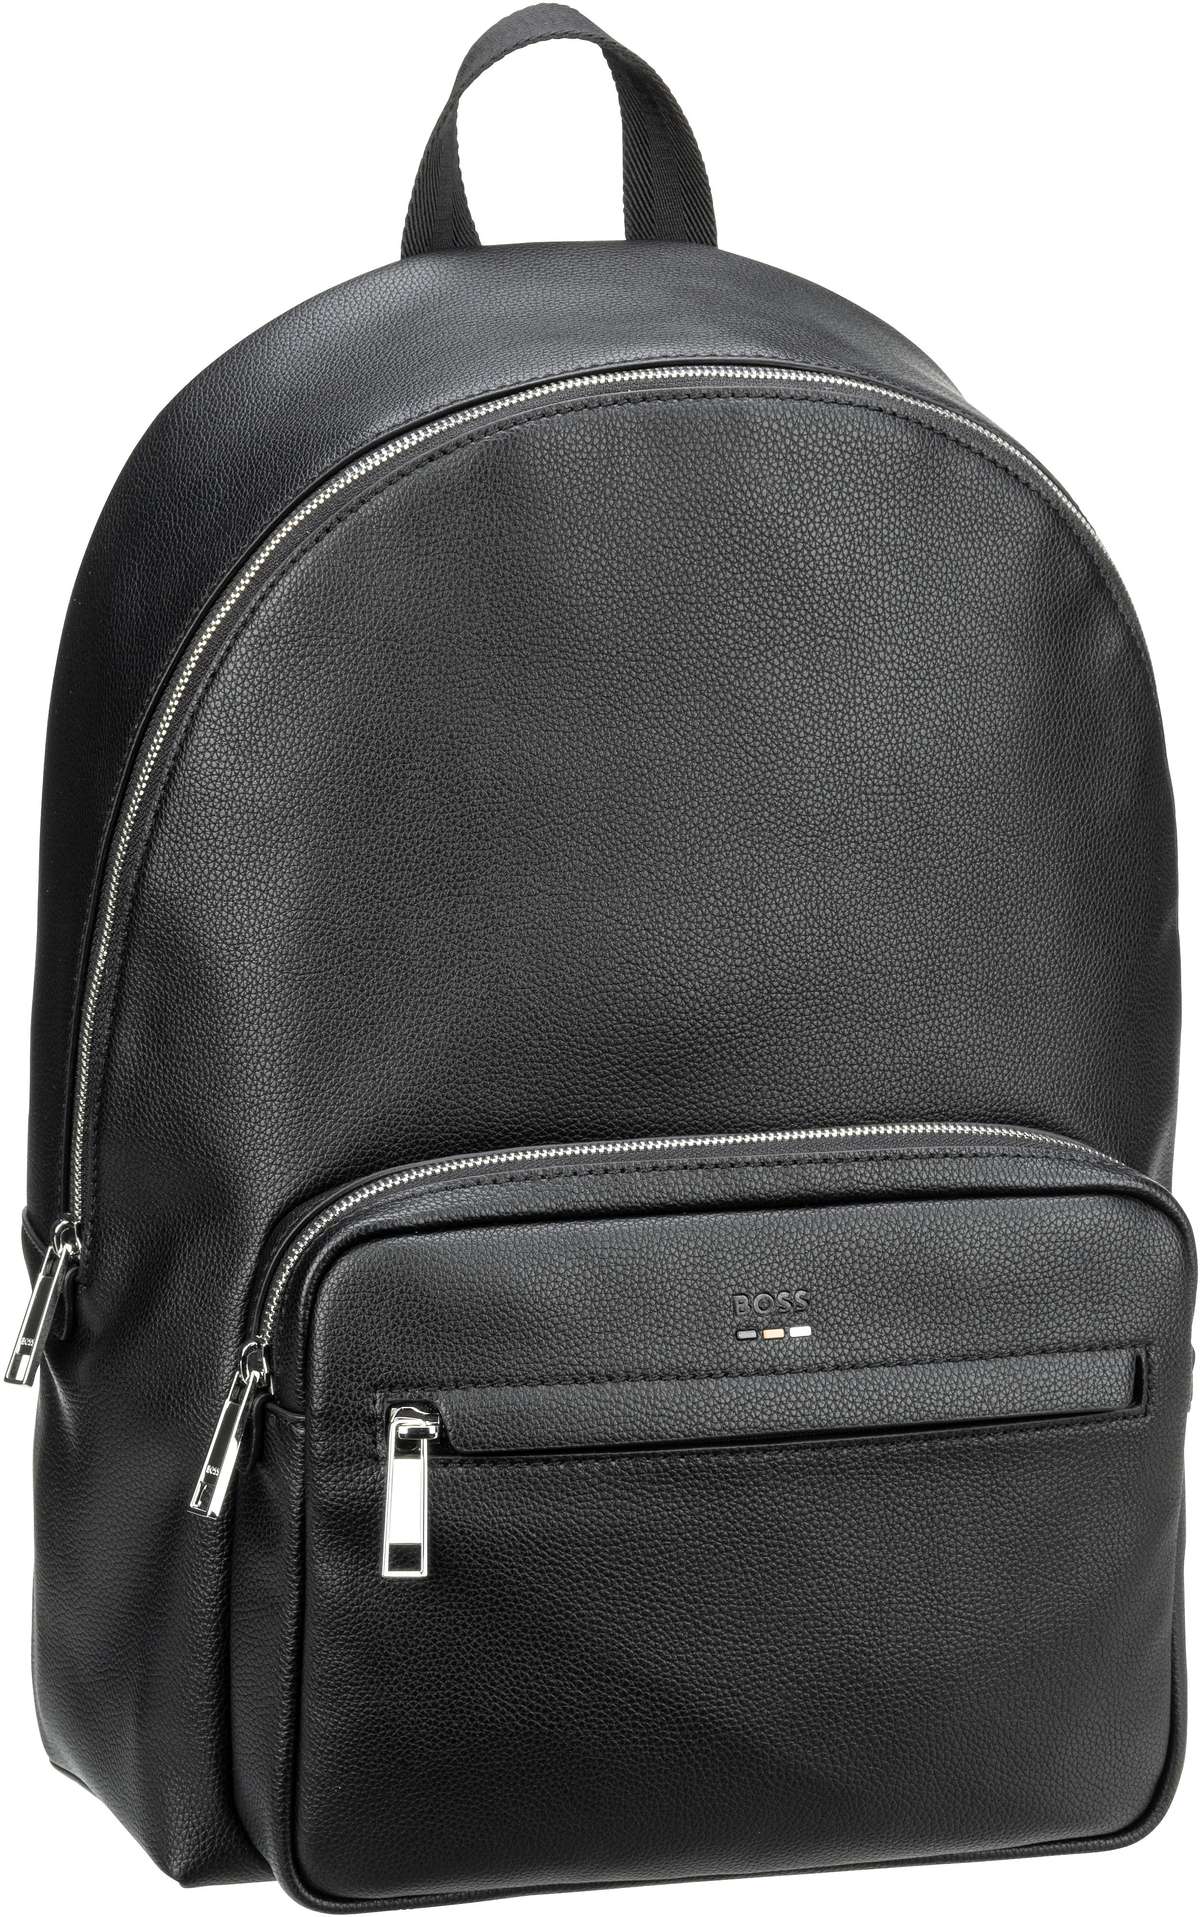 BOSS Ray Backpack  in Black (14.7 Liter), Rucksack / Backpack